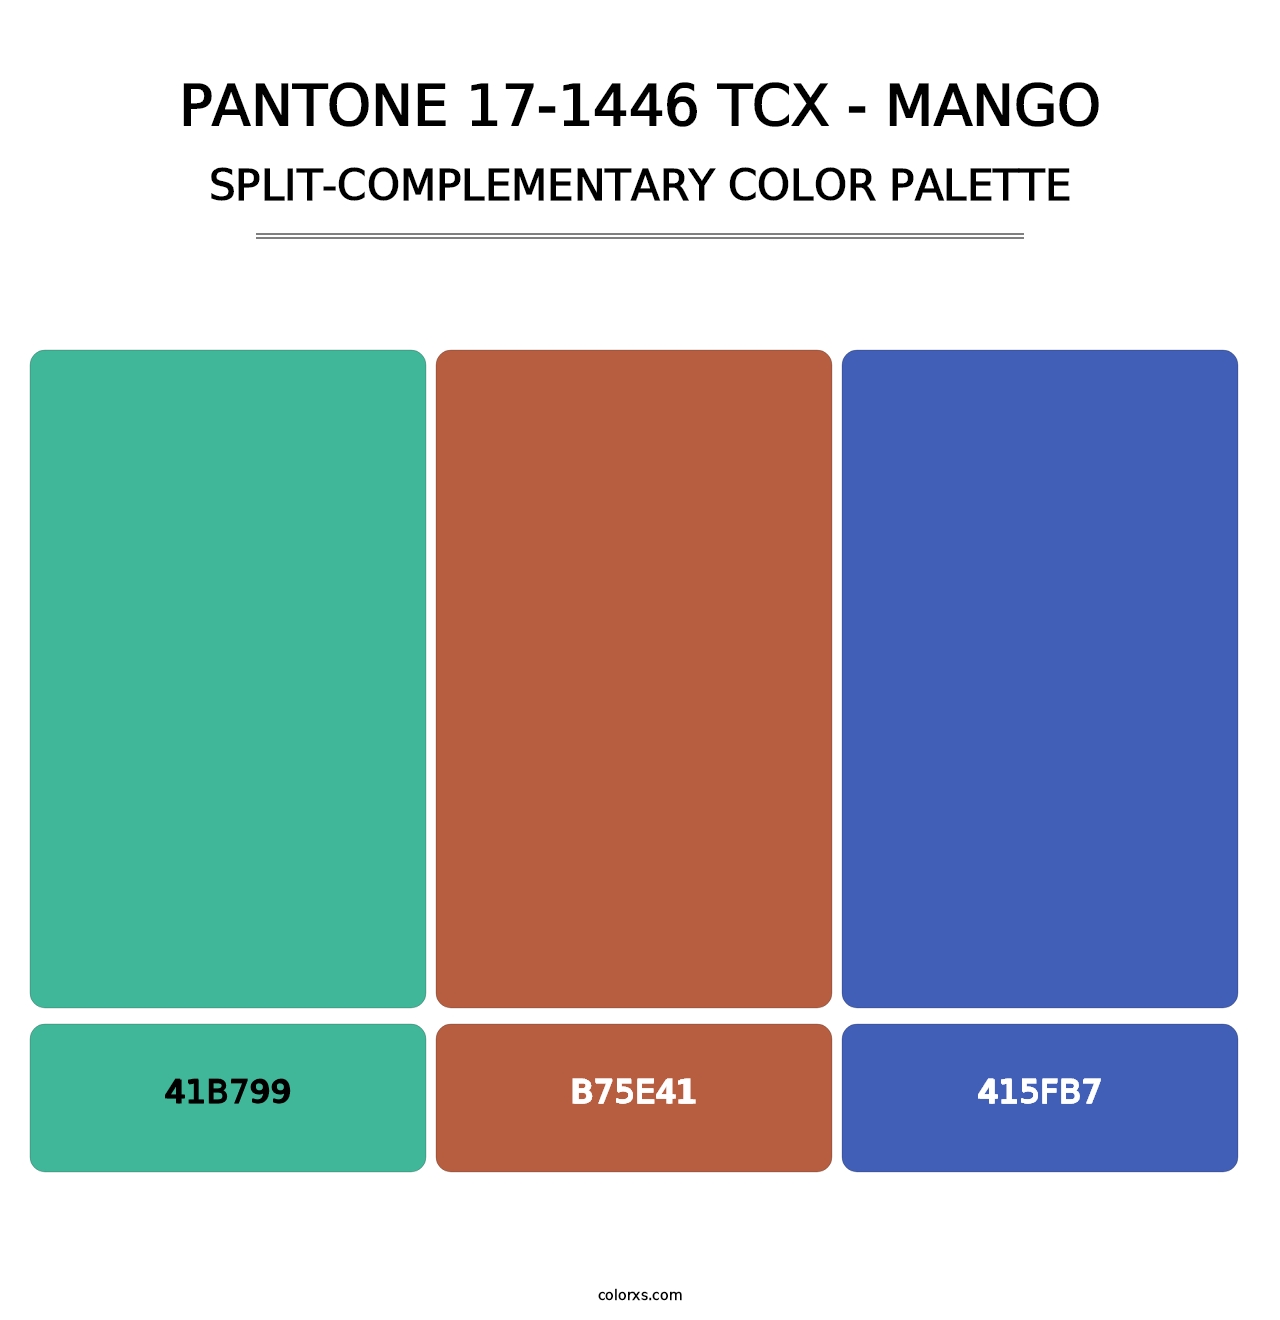 PANTONE 17-1446 TCX - Mango - Split-Complementary Color Palette